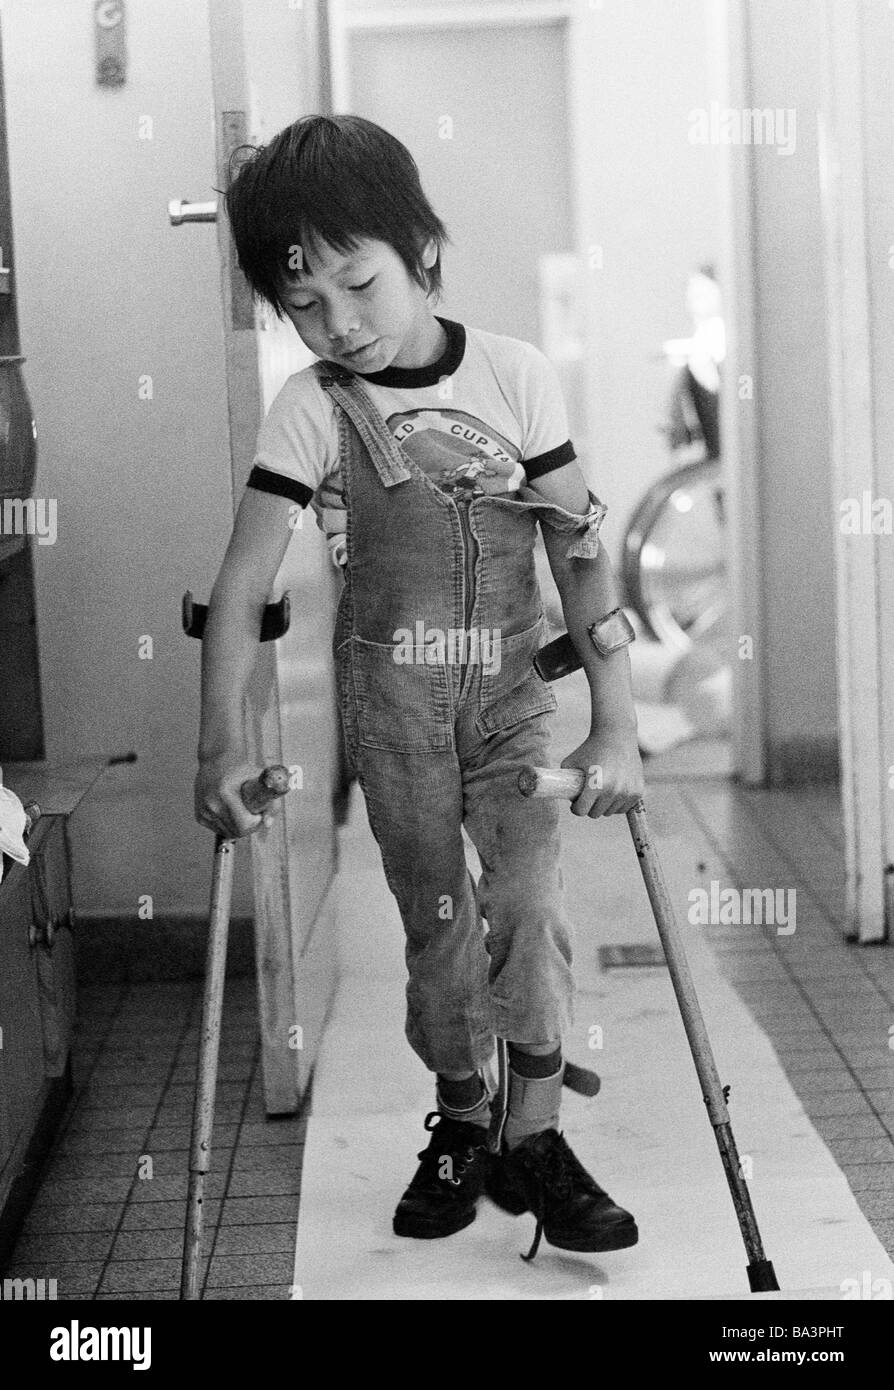 Negli anni settanta, foto in bianco e nero, persone di handicap fisici, un ragazzo dal Vietnam passeggiate con le stampelle, di età compresa tra i 6 e i 10 anni, Tan, Scuola Speciale Alsbachtal, D-Oberhausen, D-Oberhausen-Sterkrade, la zona della Ruhr, Renania settentrionale-Vestfalia Foto Stock